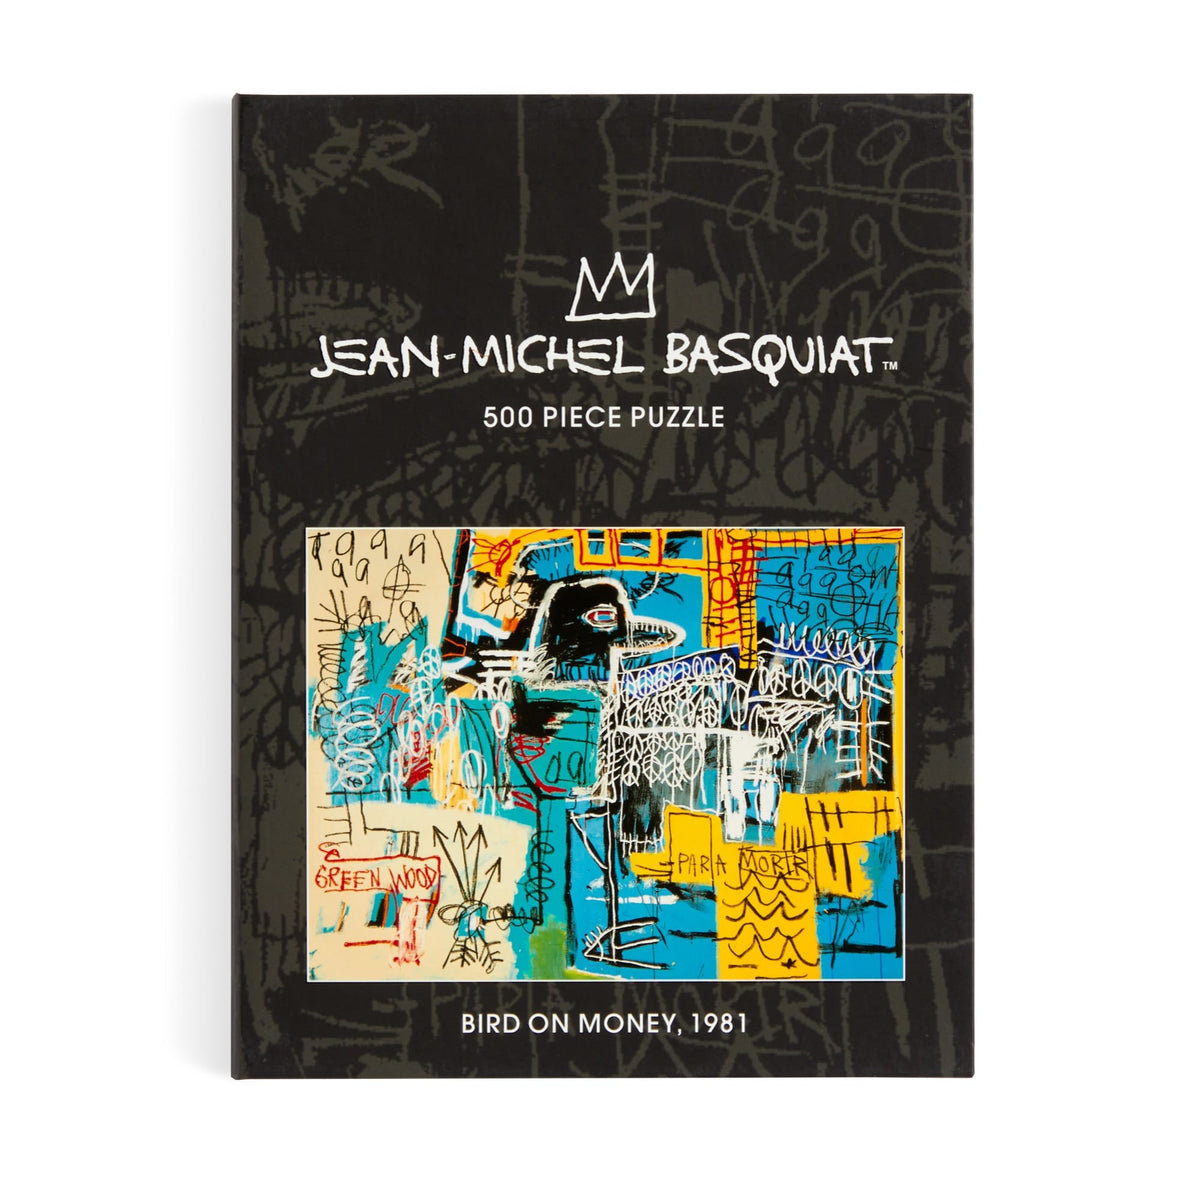 Jean-Michel Basquiat [Book]